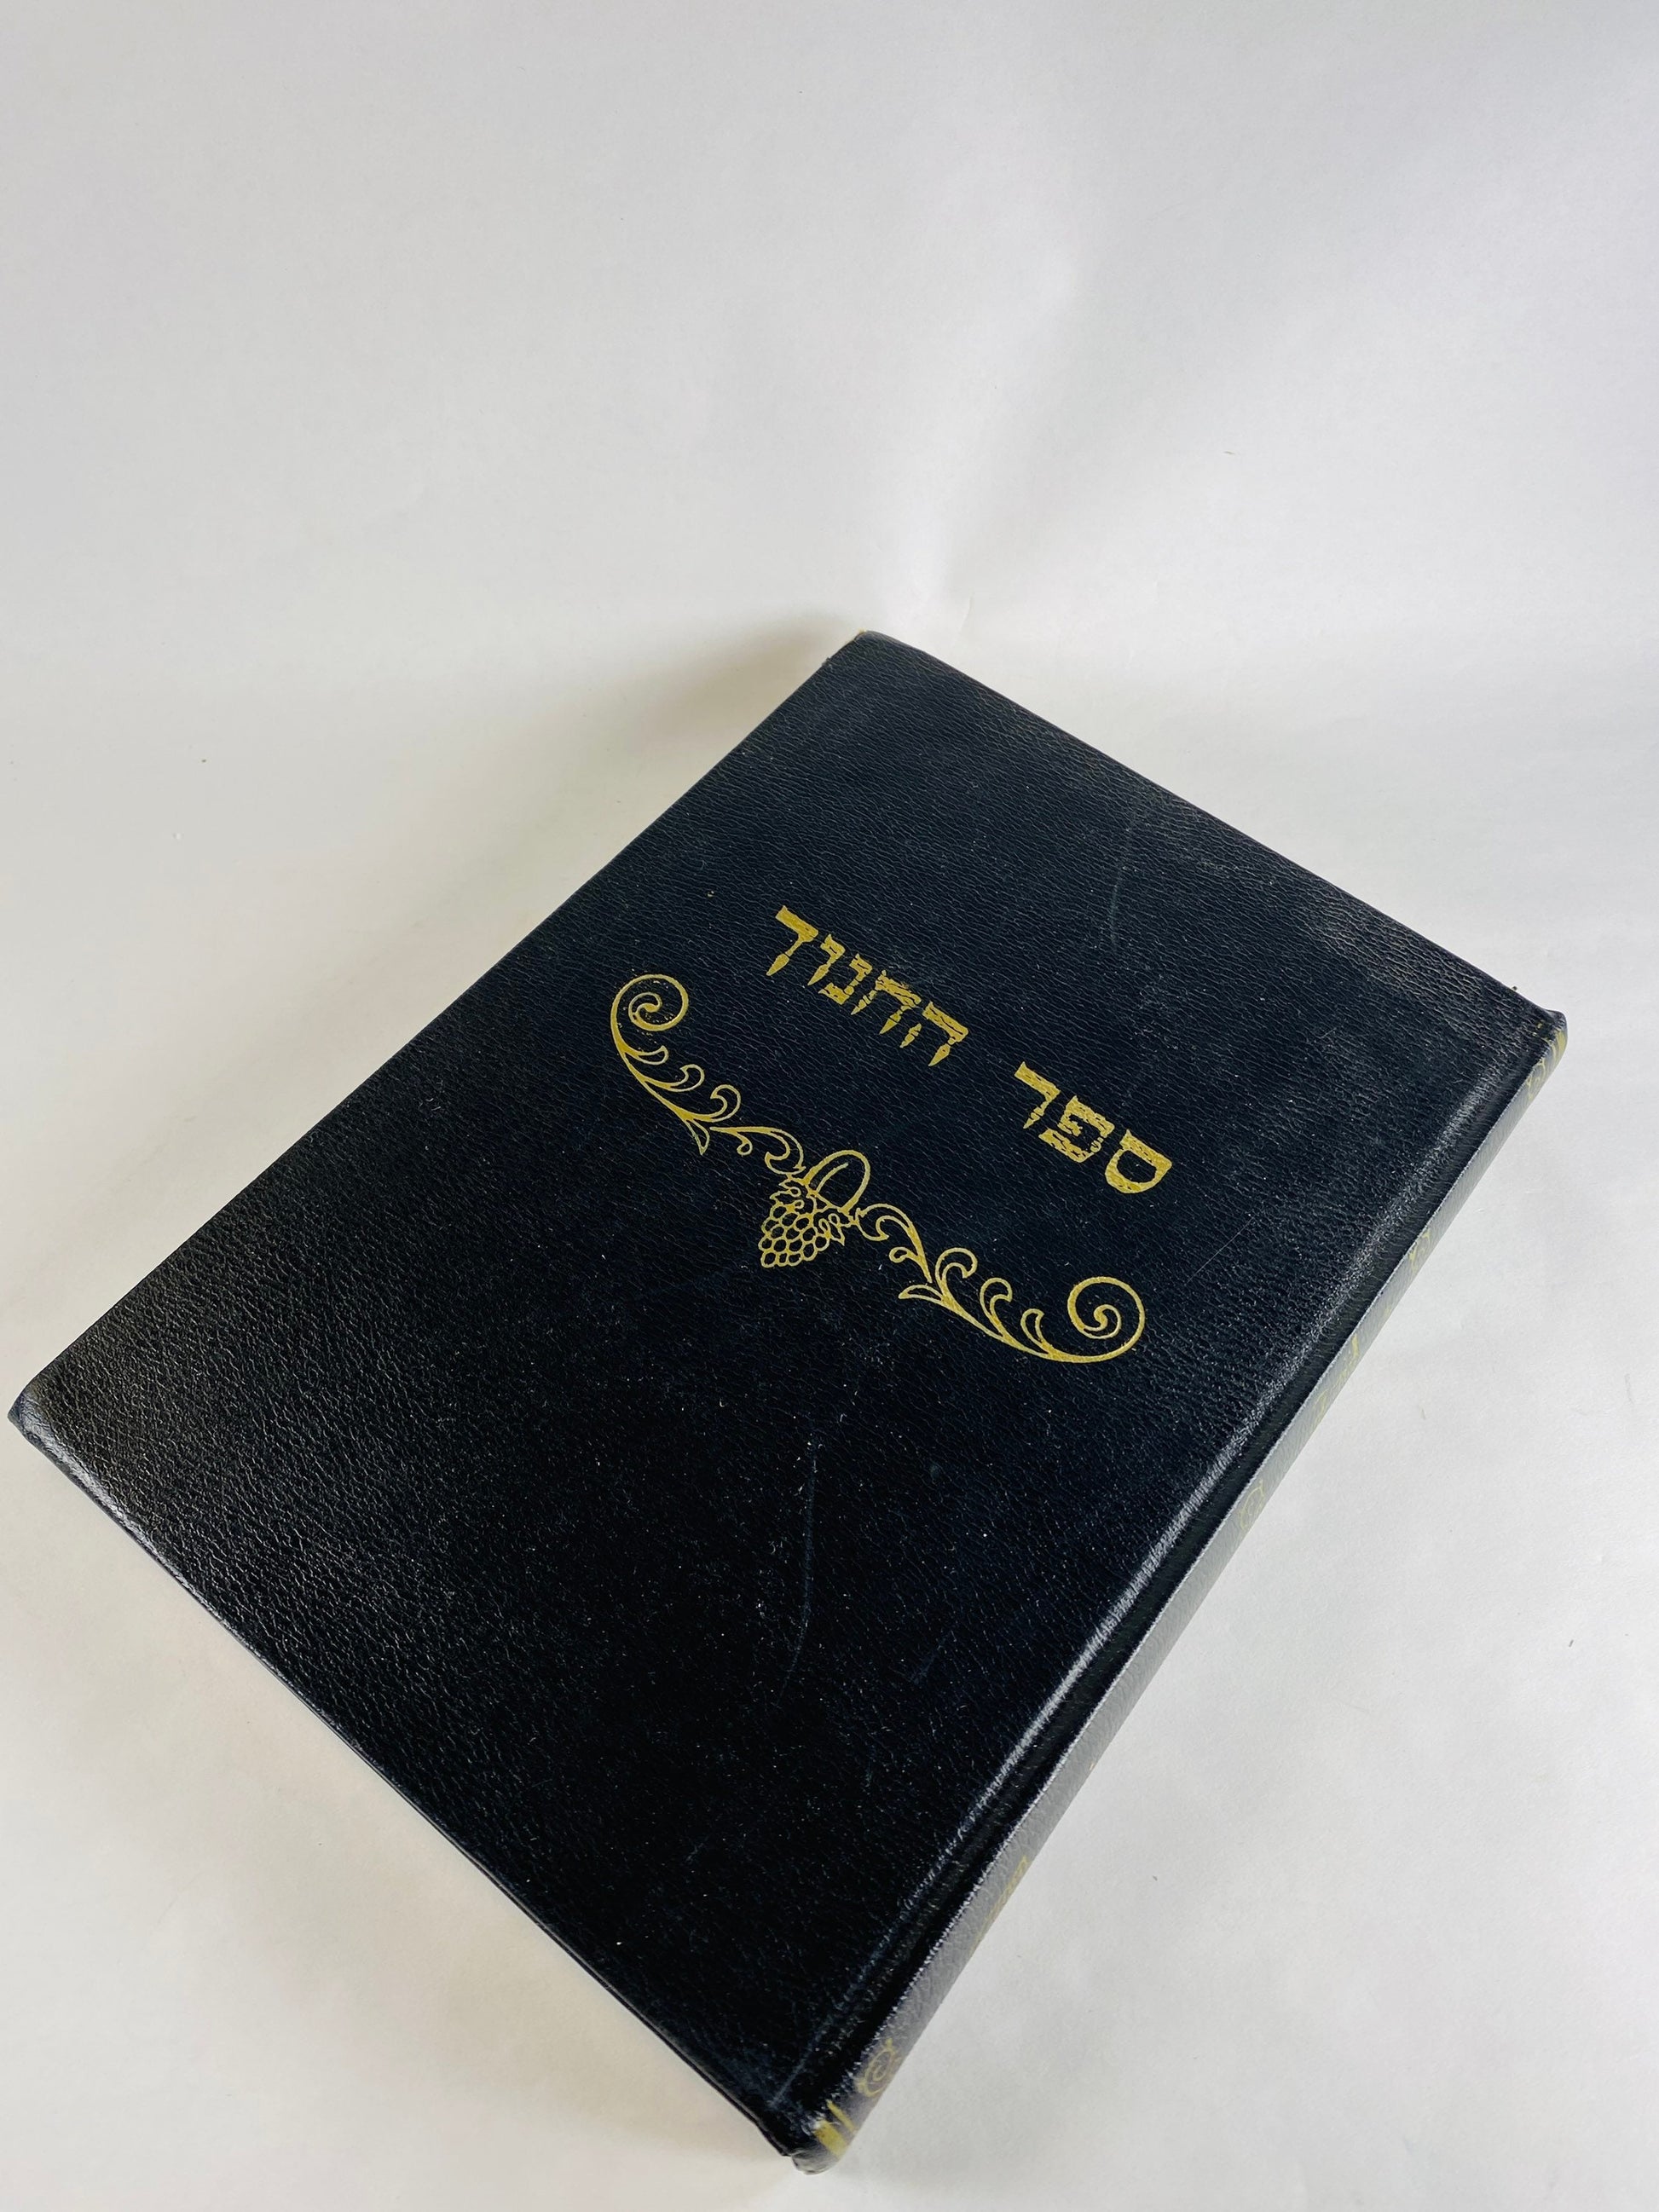 Vintage Mishnah Judaica Hebraica Jewish Ketuvim. Targum Tehillim in Hebrew black binding Siddur printed in Israel